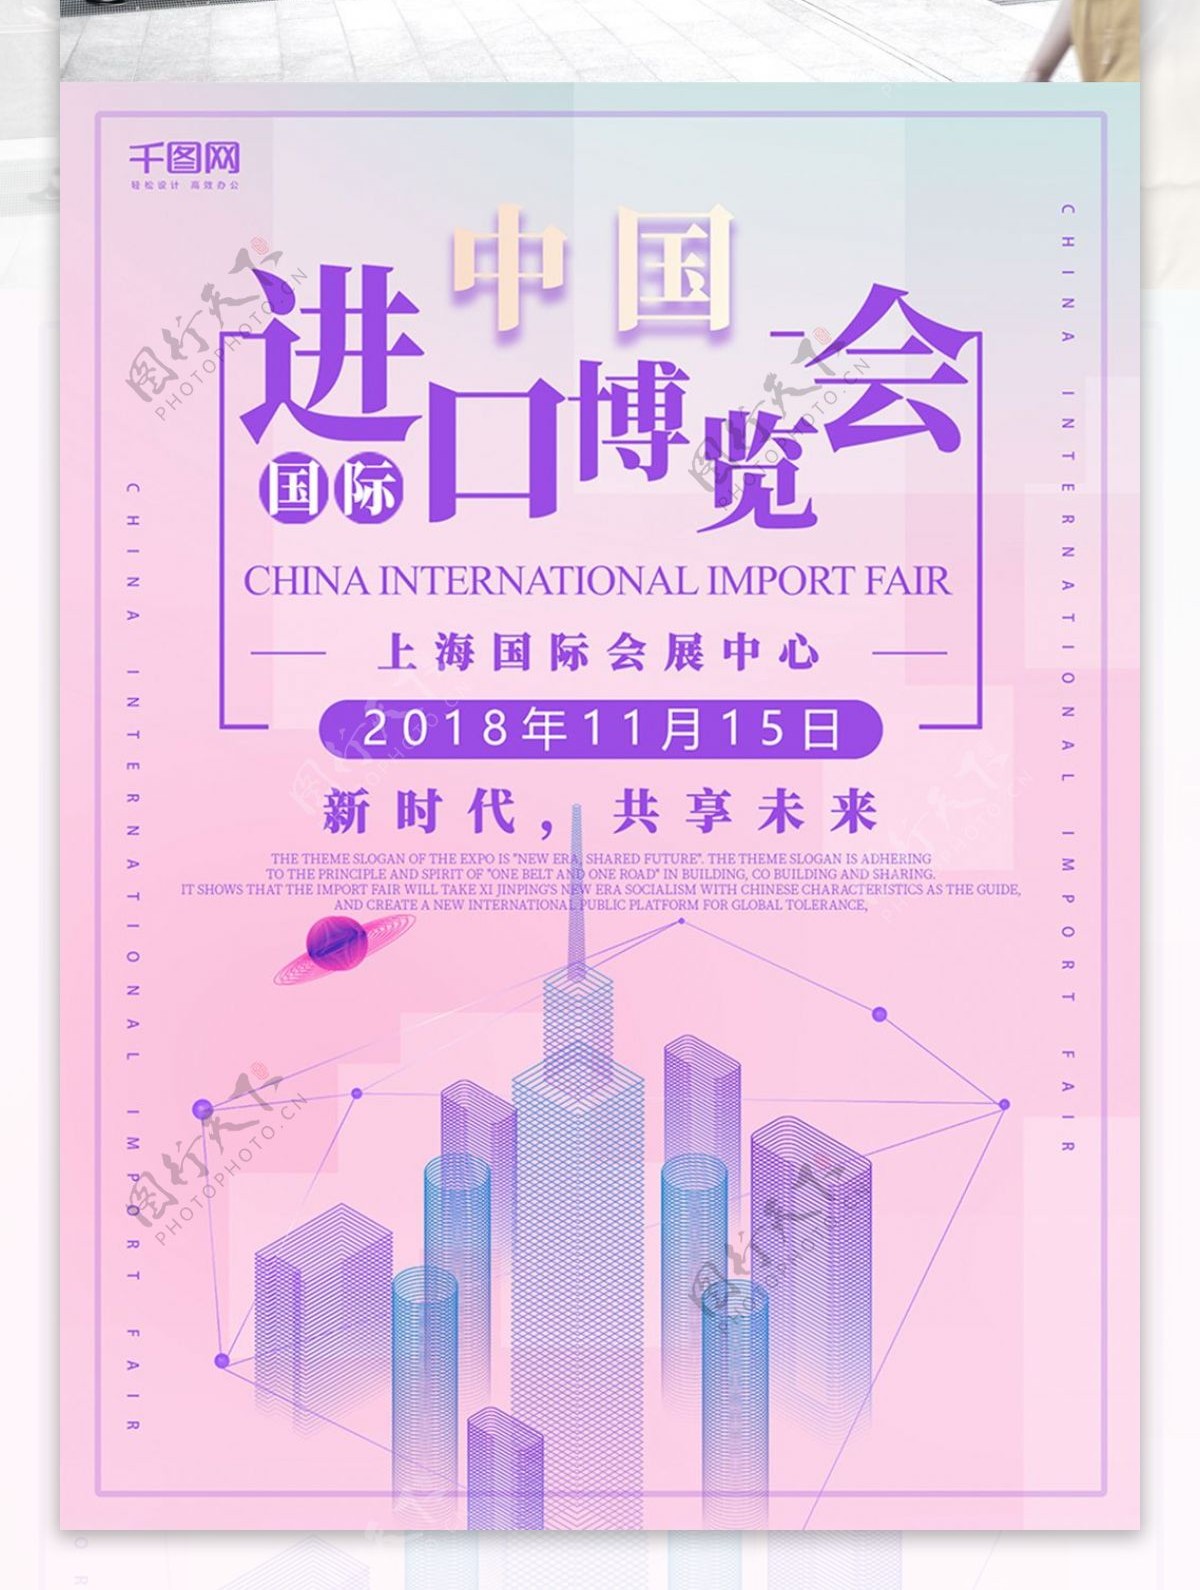 原创简约炫酷中国国际进口博览会海报